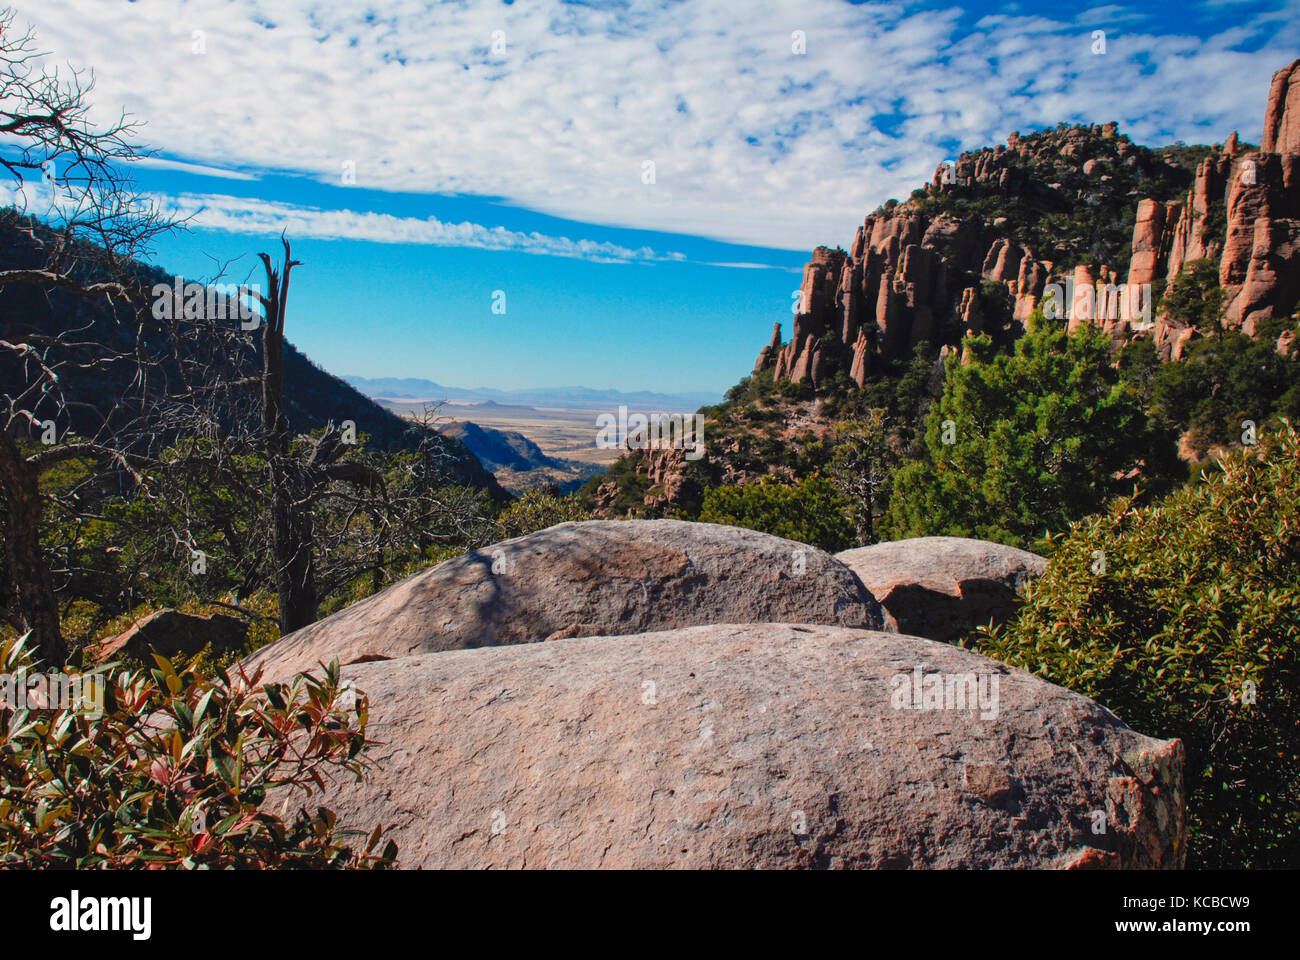 El Monumento Nacional Chiricahua en el sureste de Arizona es parte del Servicio de Parques nacionales de los Estados Unidos Foto de stock